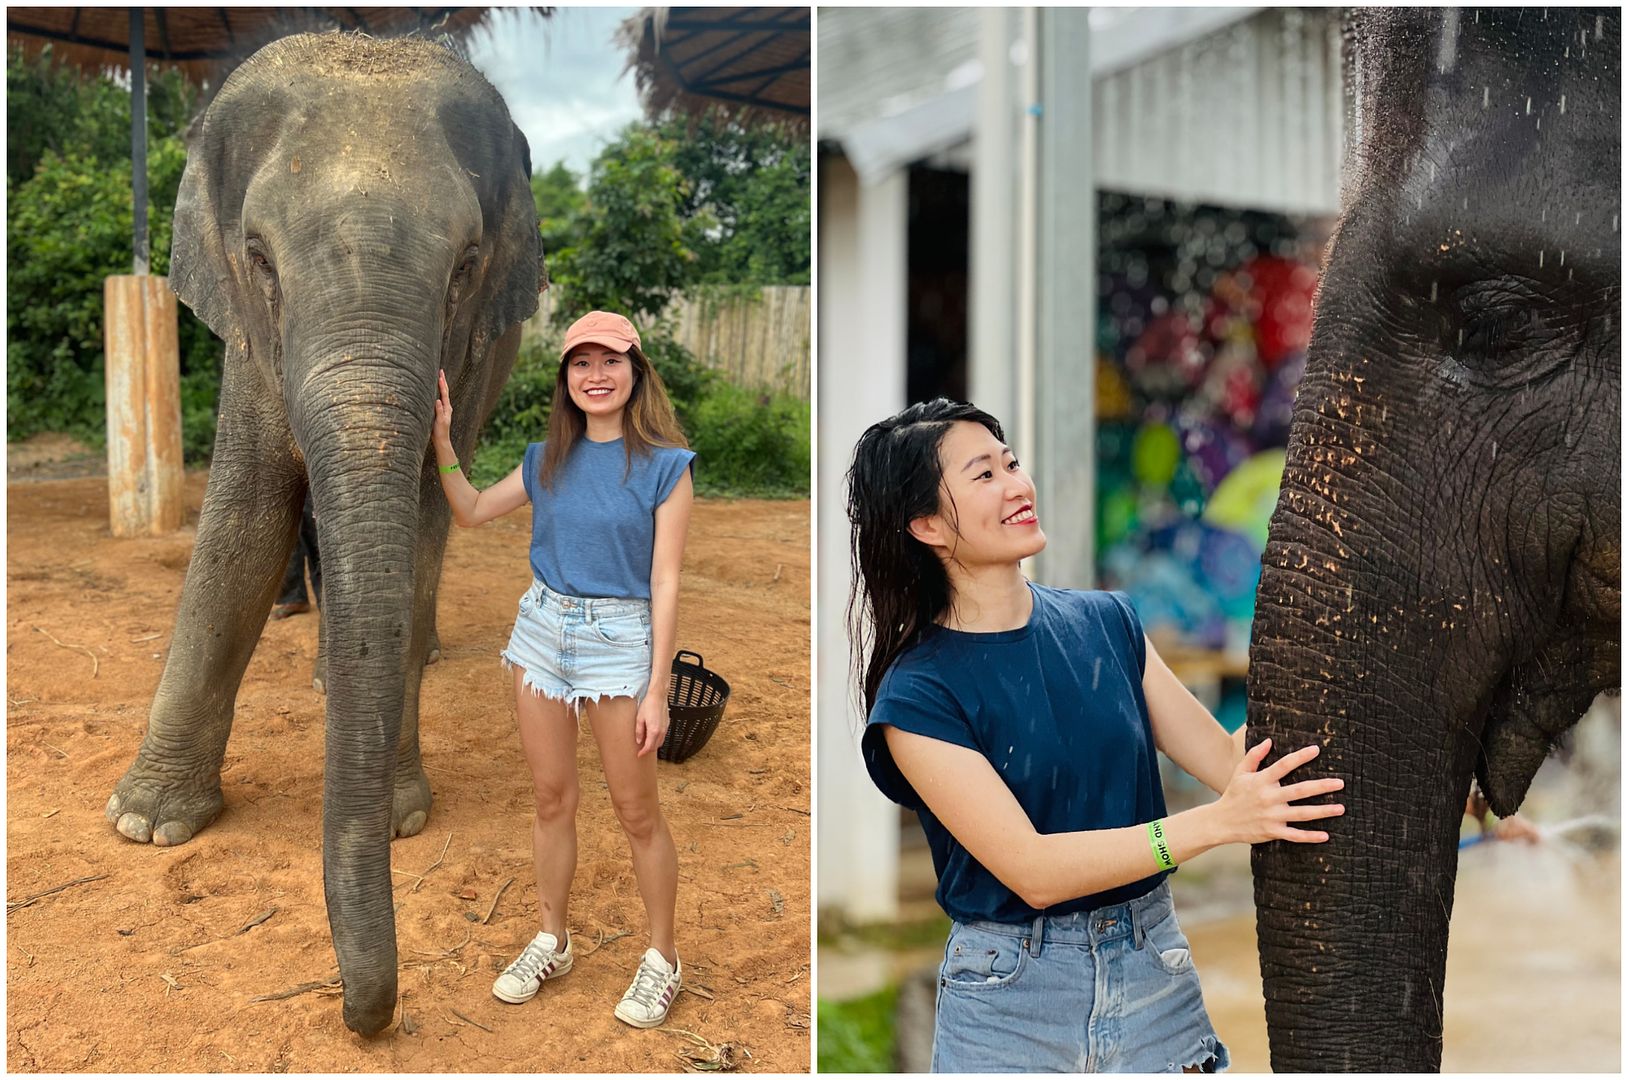 The Slate Phuket ethical elephant sanctuary